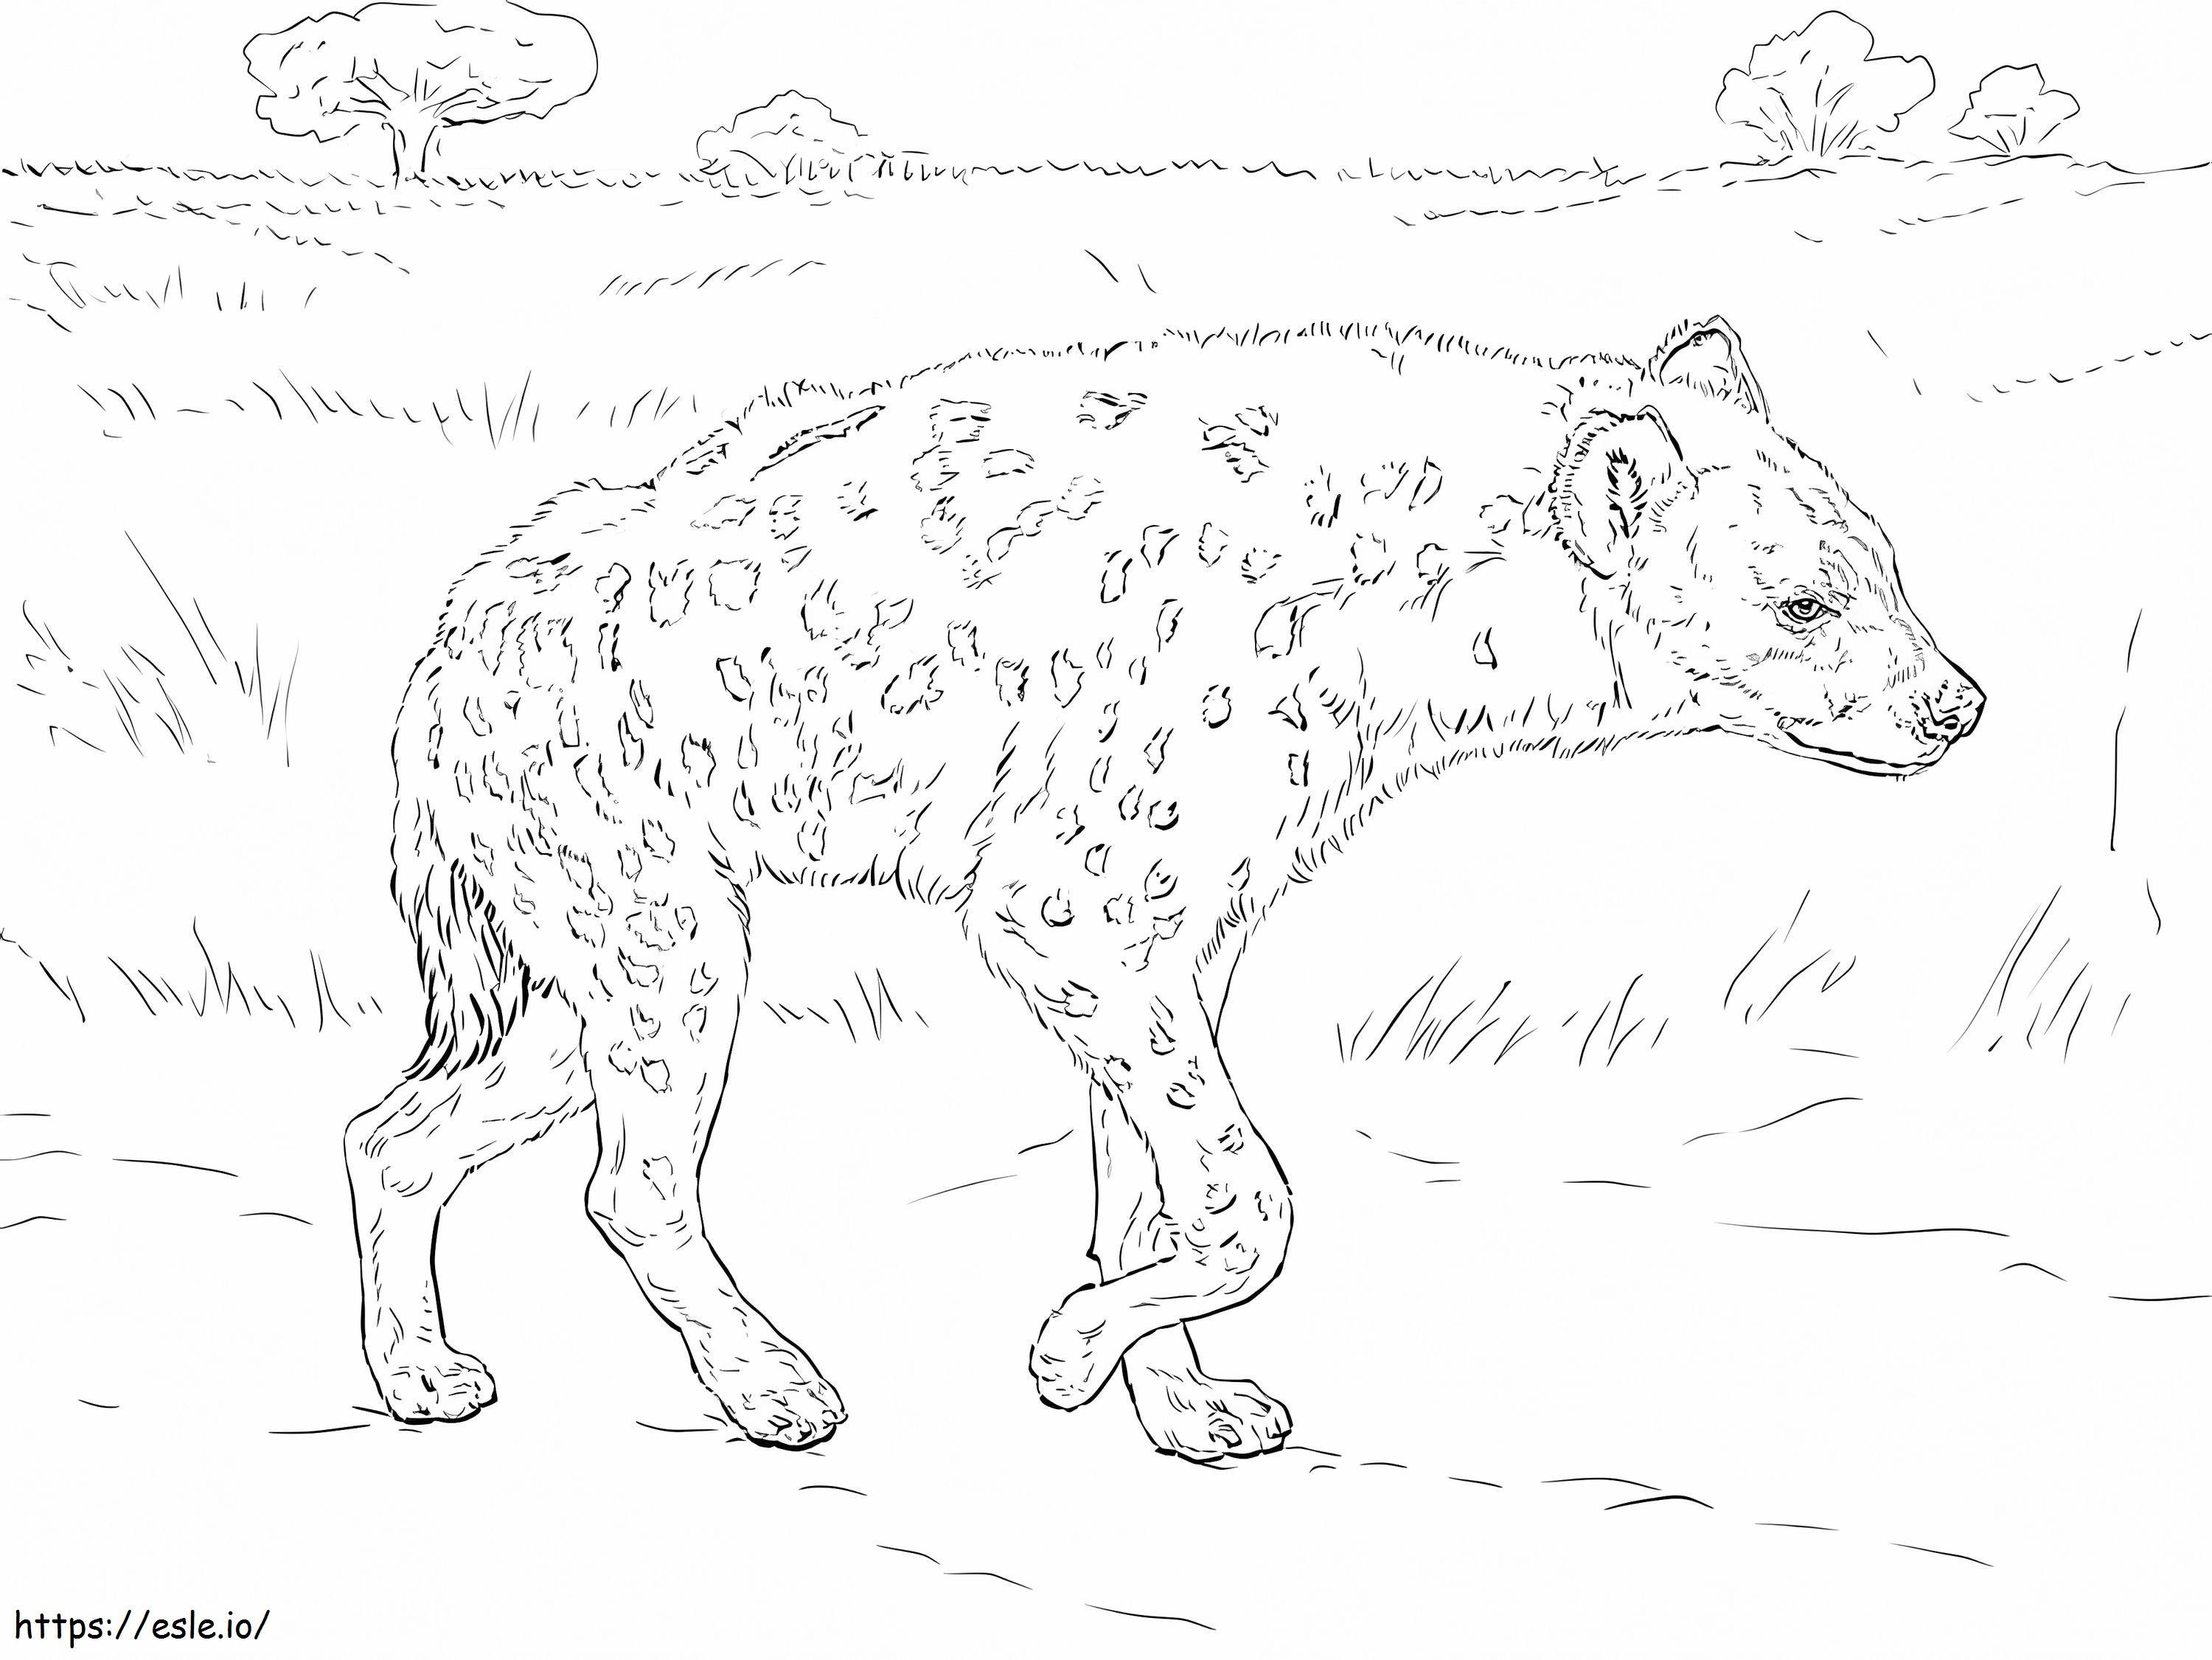 La iena maculata da colorare